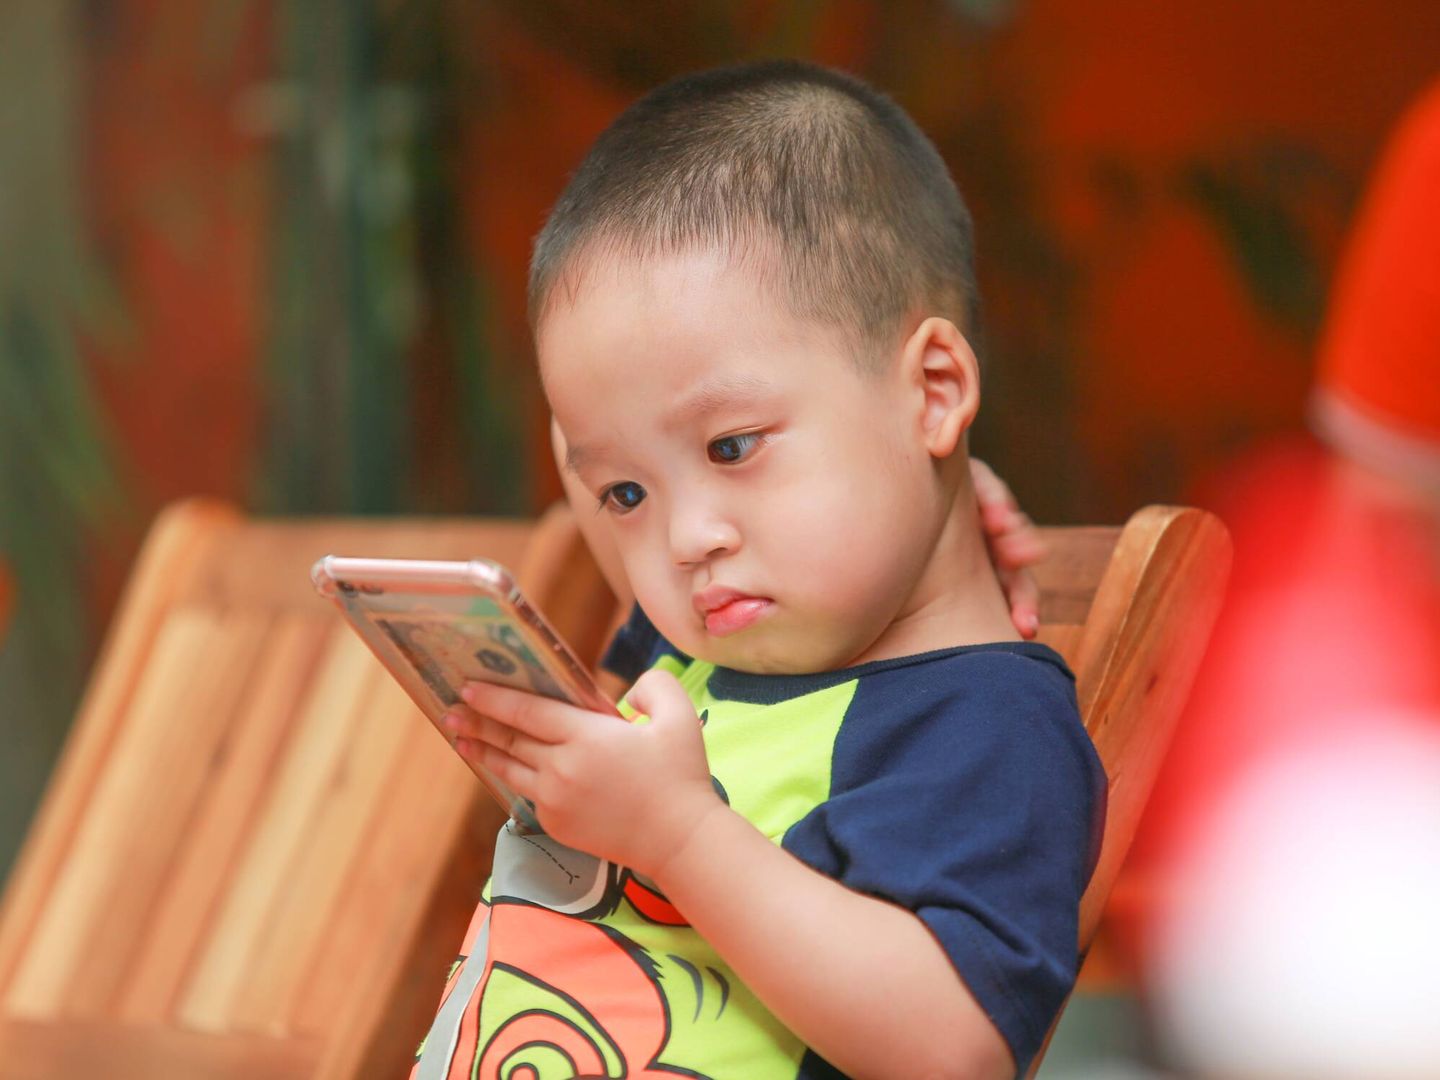 Los niños de tres a cinco años también deberían limitar el tiempo frente a la pantalla, dicen los expertos. (Pexels)